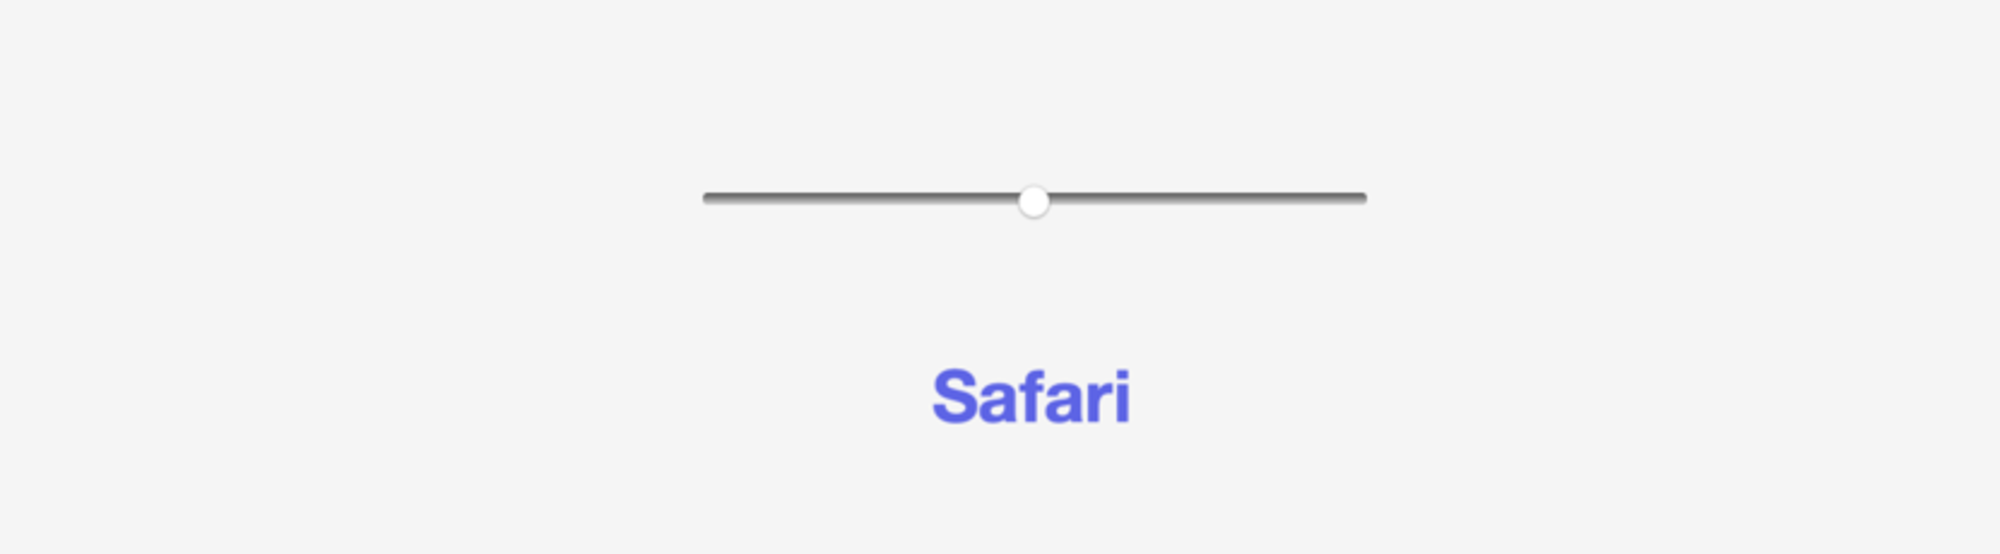 Диапазонный элемент ввода по умолчанию в Safari